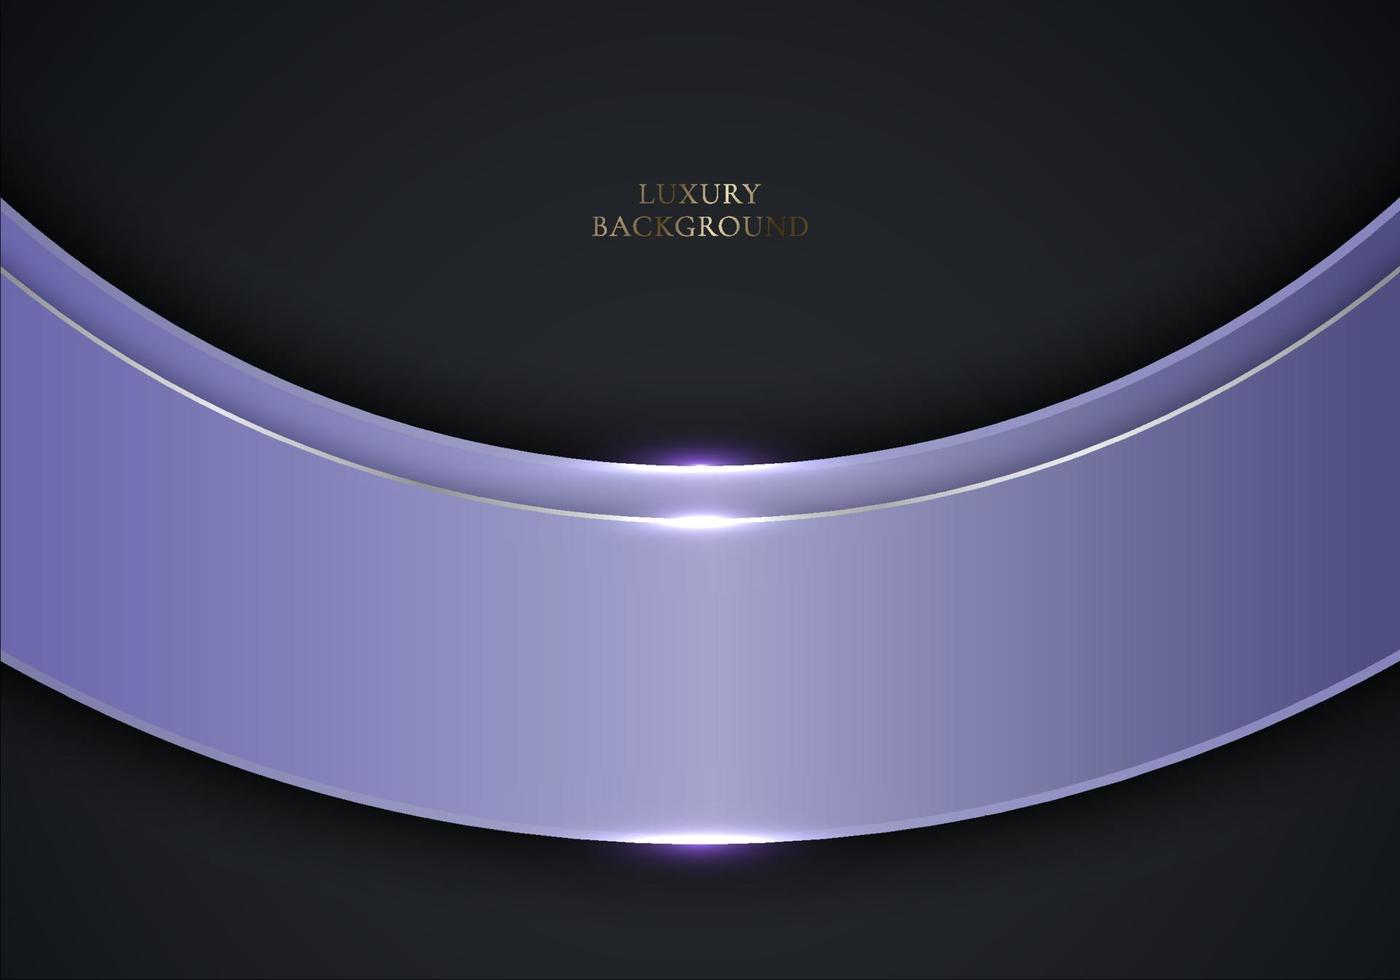 3d modernes Luxus-Template-Design lila abgerundete gebogene Streifen vektor